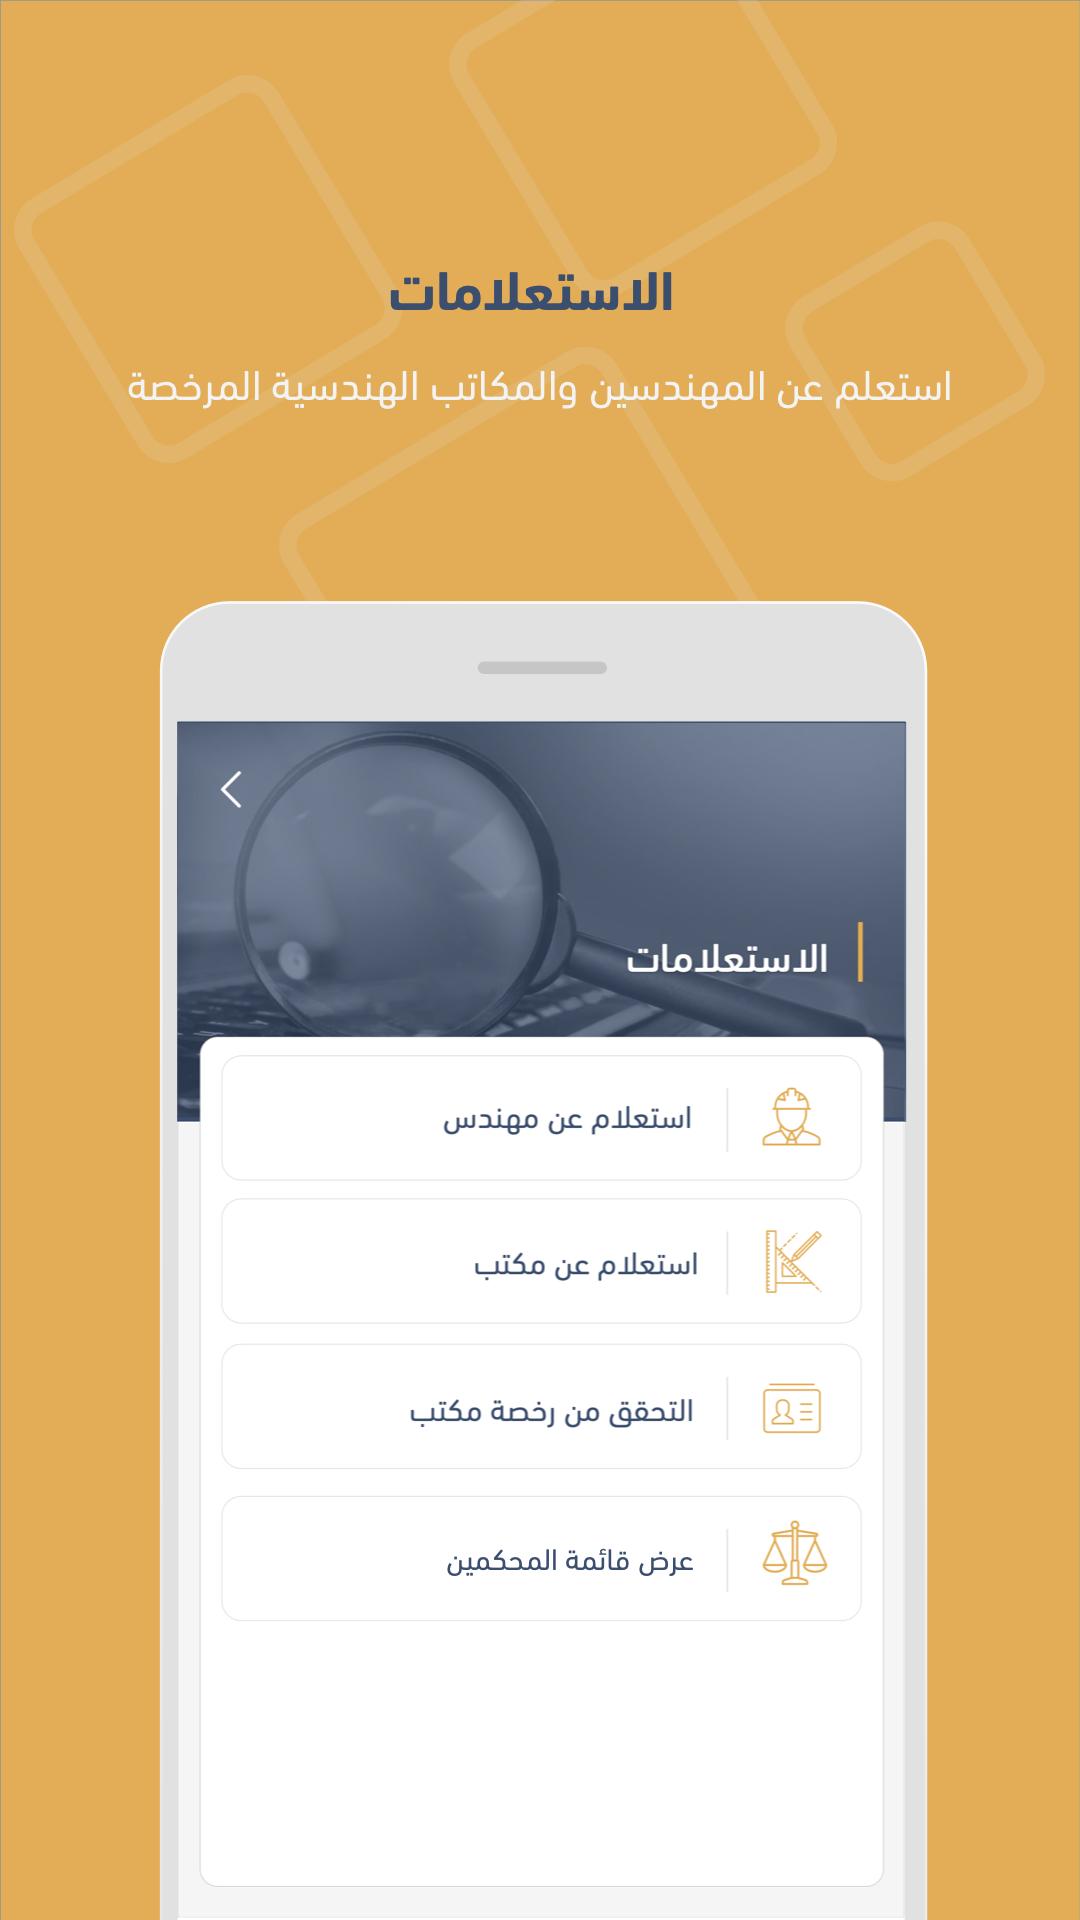 الهيئة السعودية للمهندسين for Android APK Download